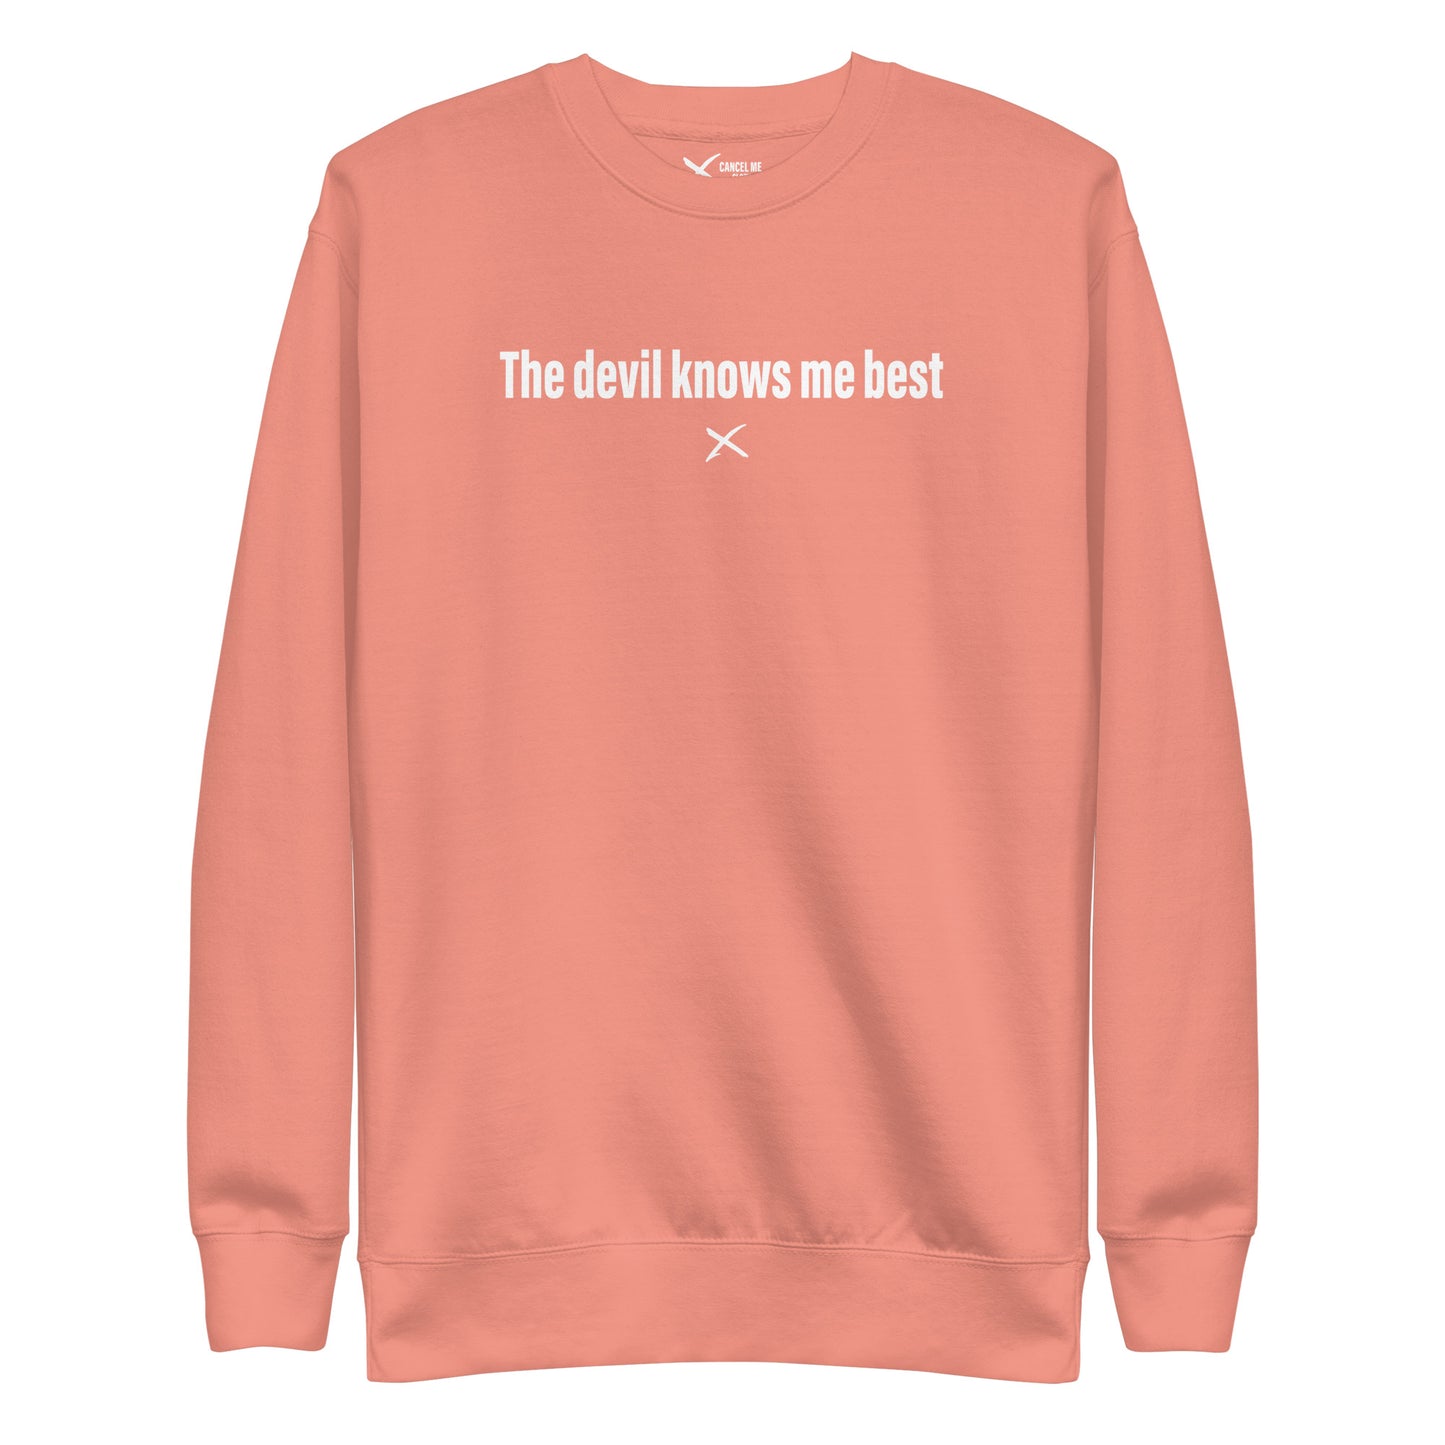 The devil knows me best - Sweatshirt